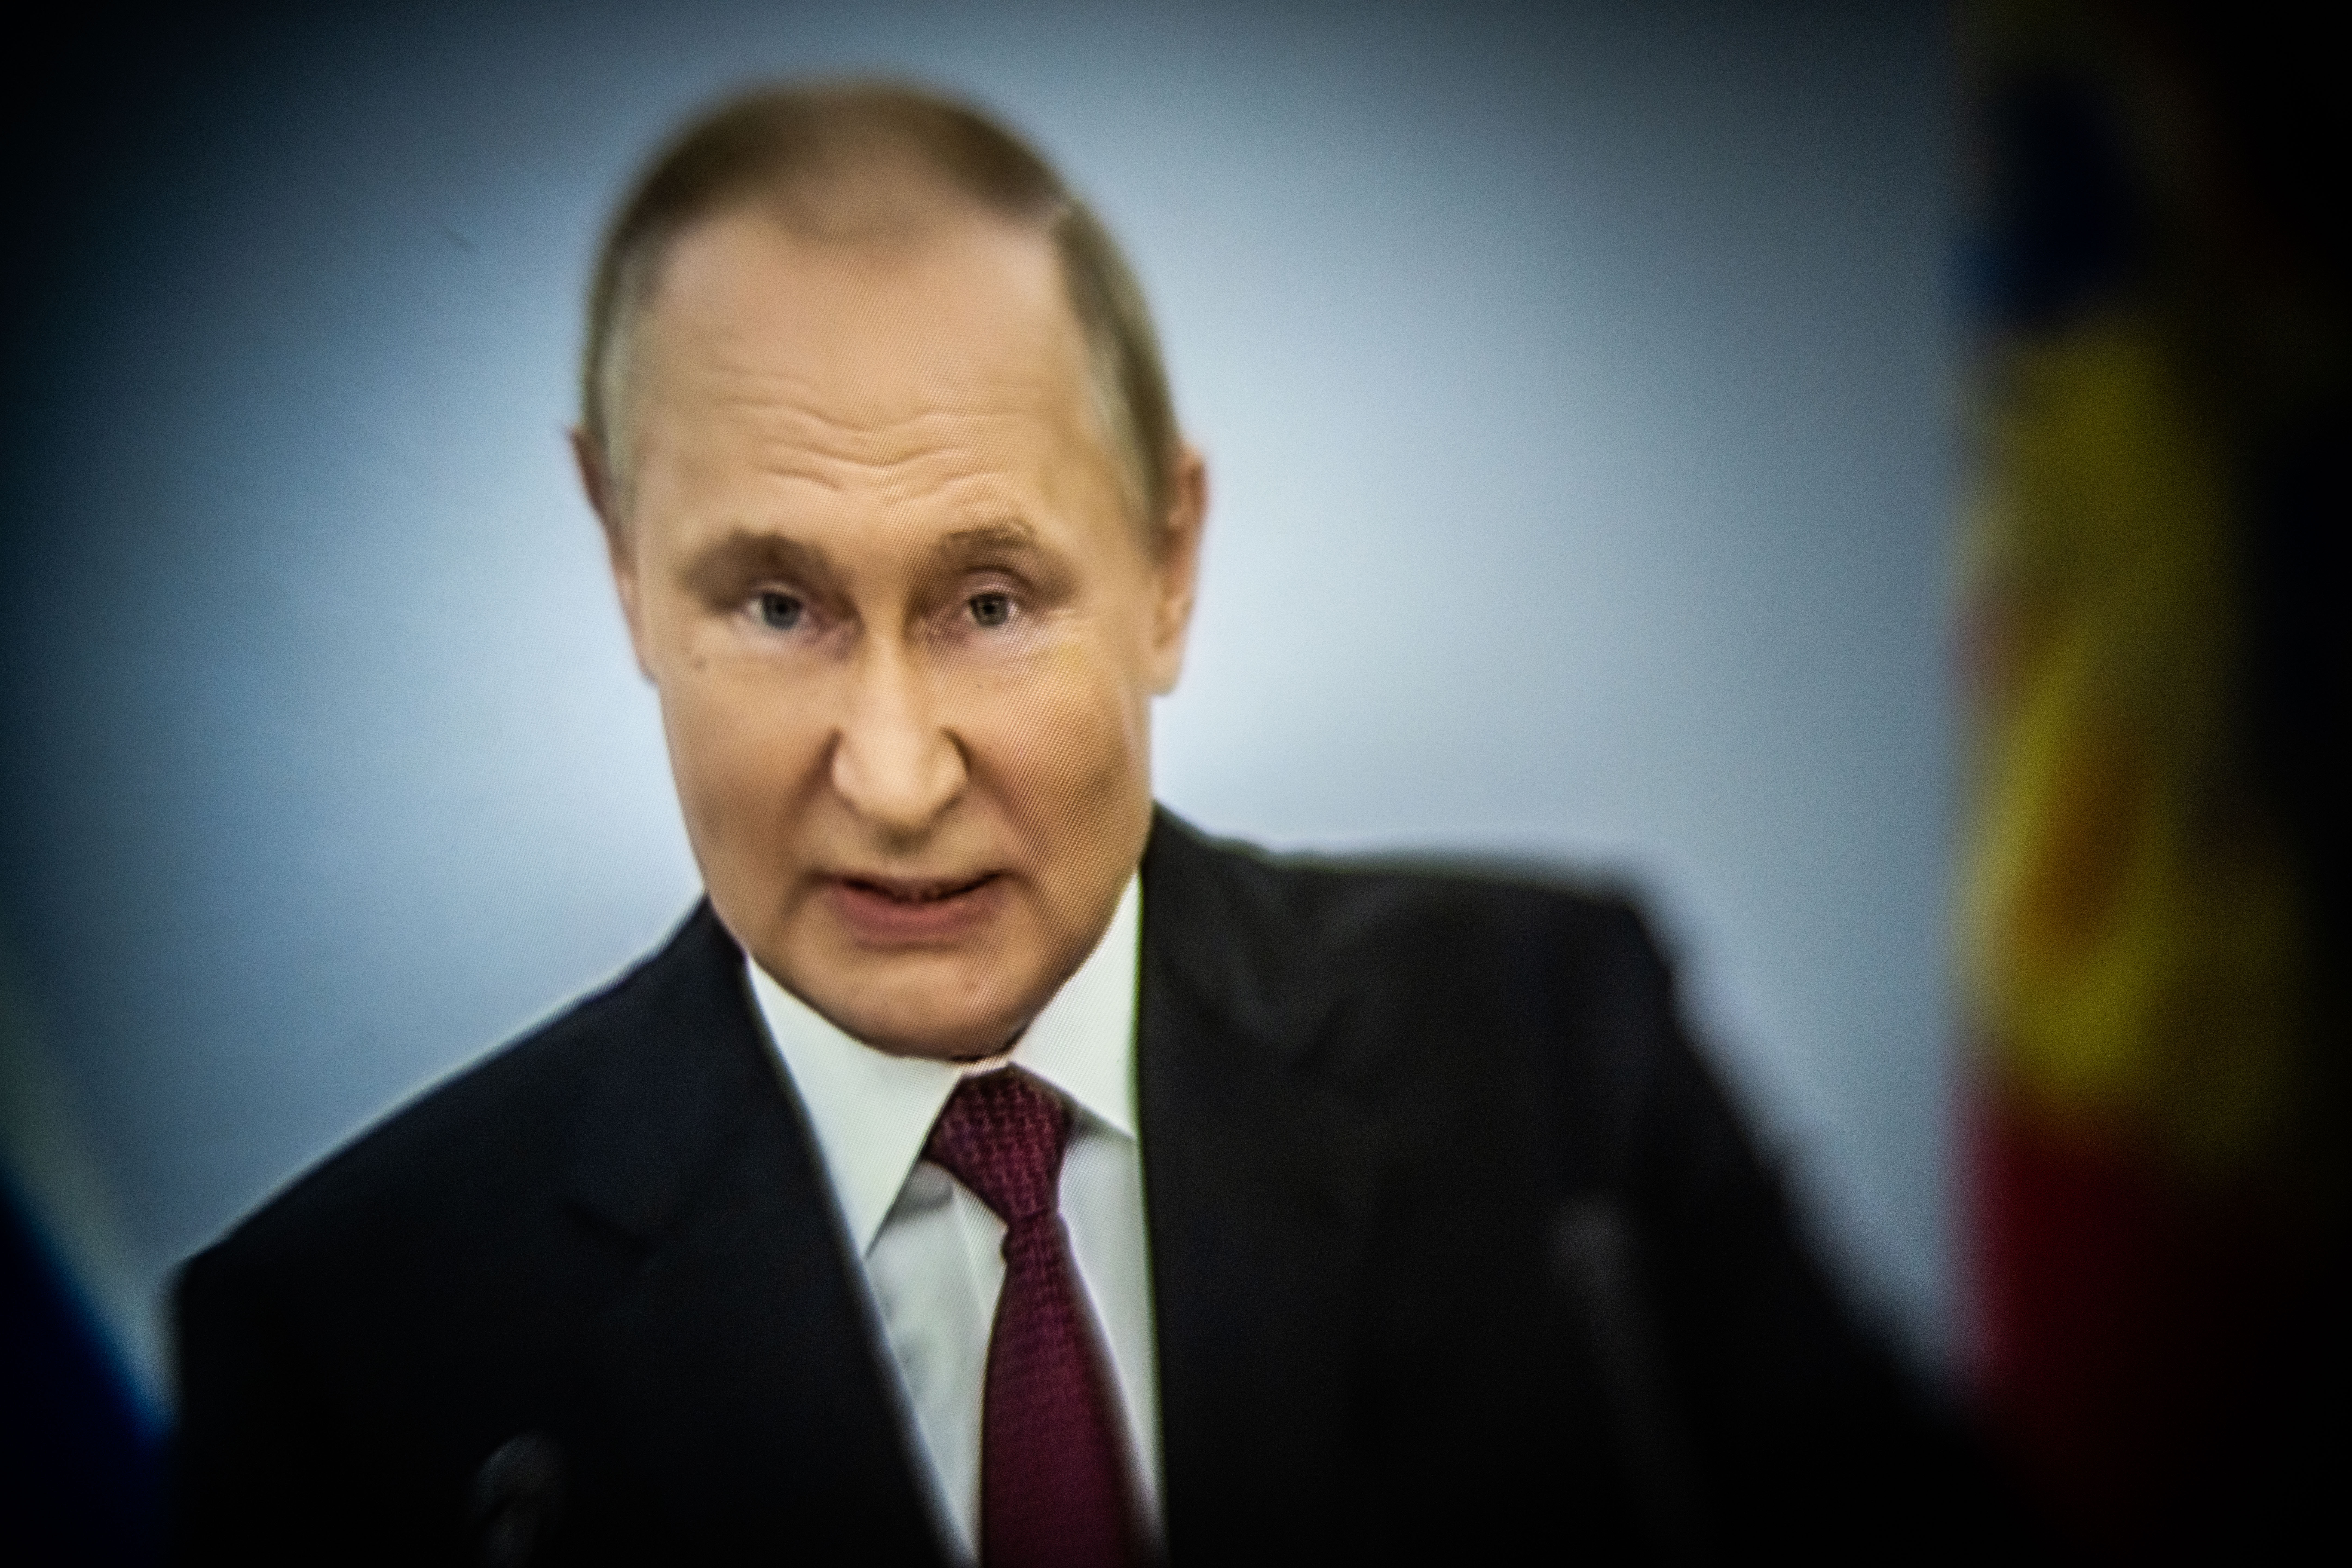 Vladimir Poutine lors d'un discours en septembre dernier. / Photograph by Xose Bouzas / Hans Lucas.